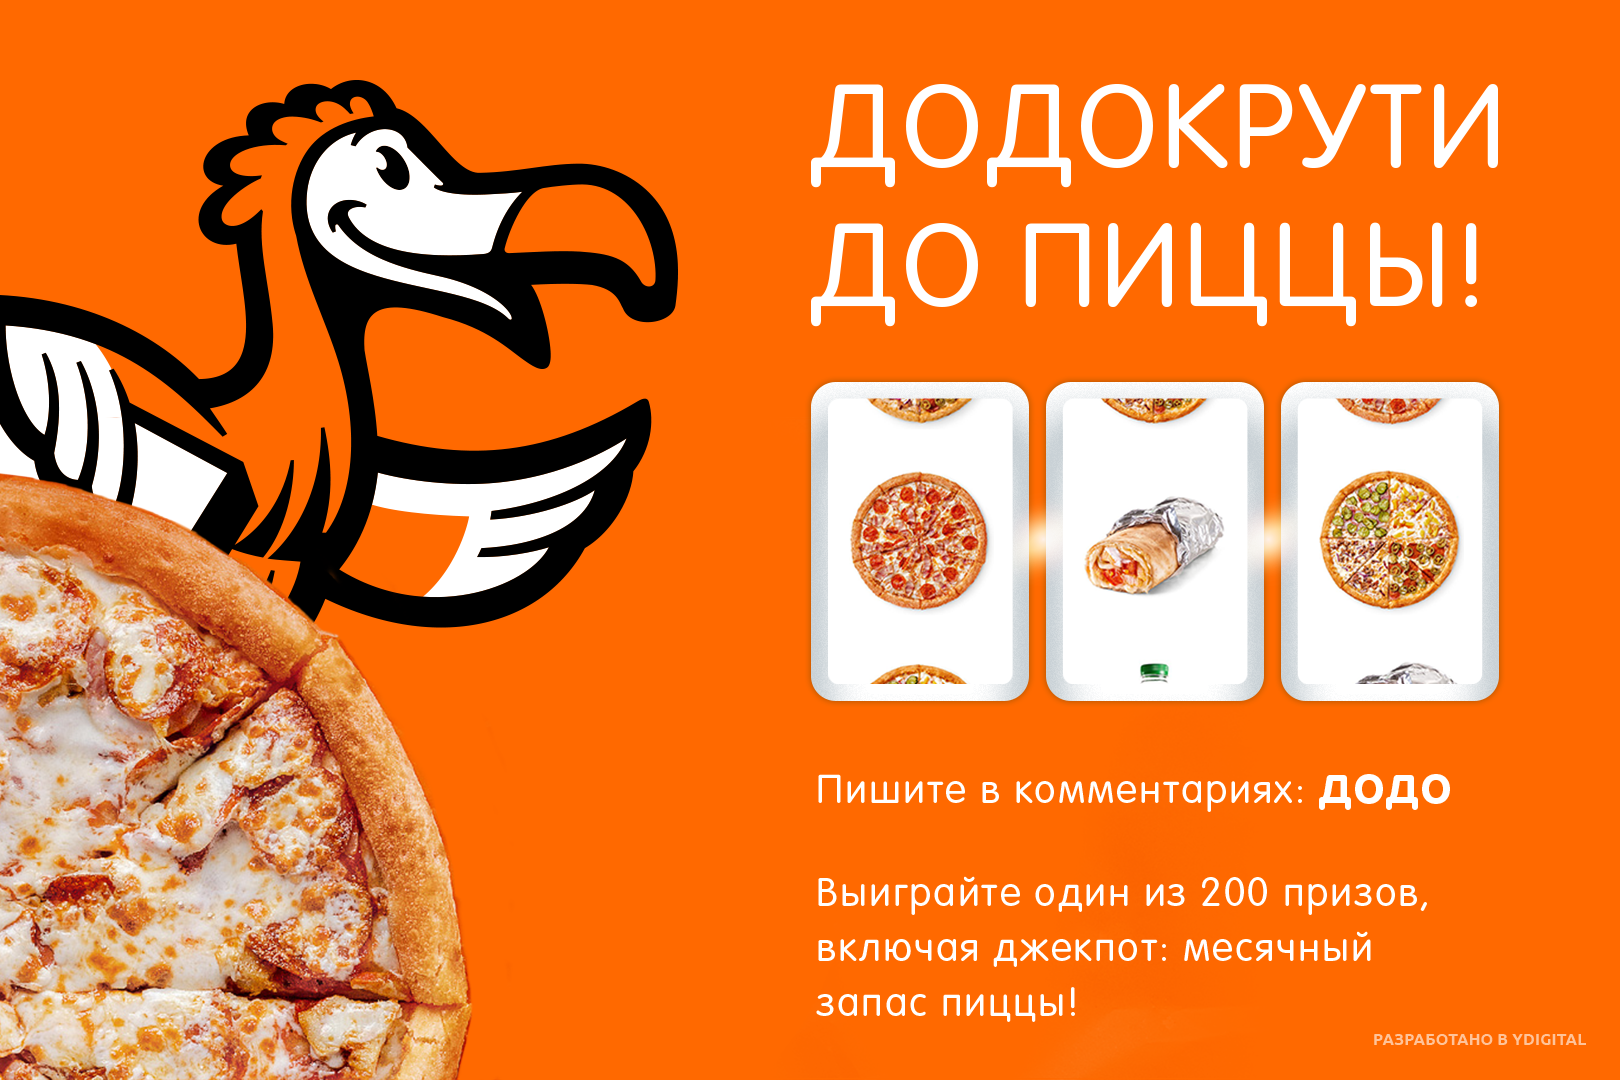 Додо каневская. Додо пицца реклама. Рекламная листовка Додо пицца. Додо пицца картинки. Баннеры рекламные Додо пиццерии.